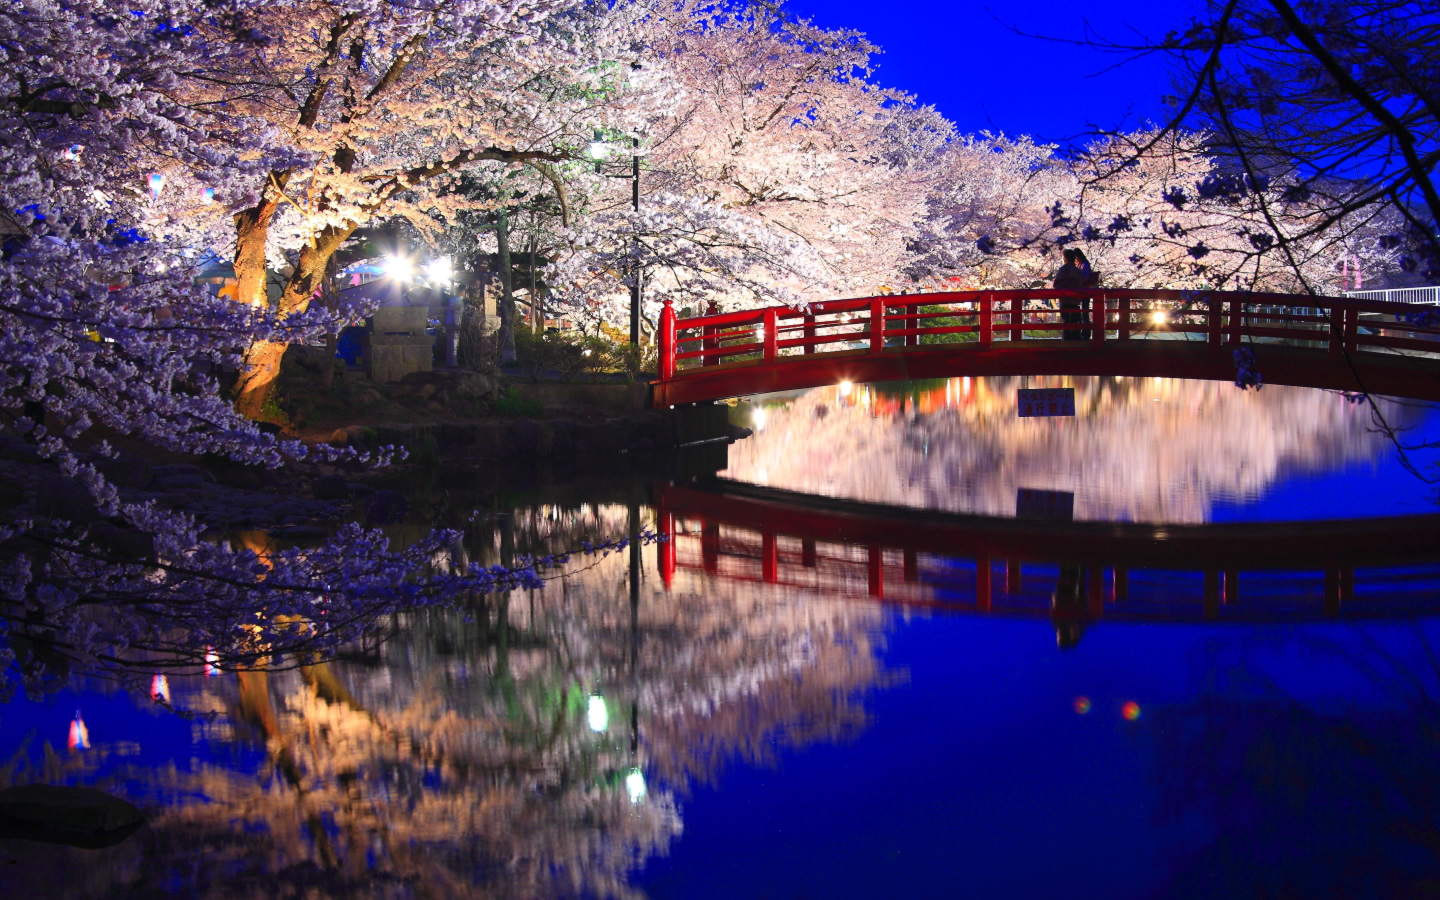 臥竜公園 夜桜 壁紙 Pc 1440x900 夜景 きれいな夜景の壁紙 Naver まとめ